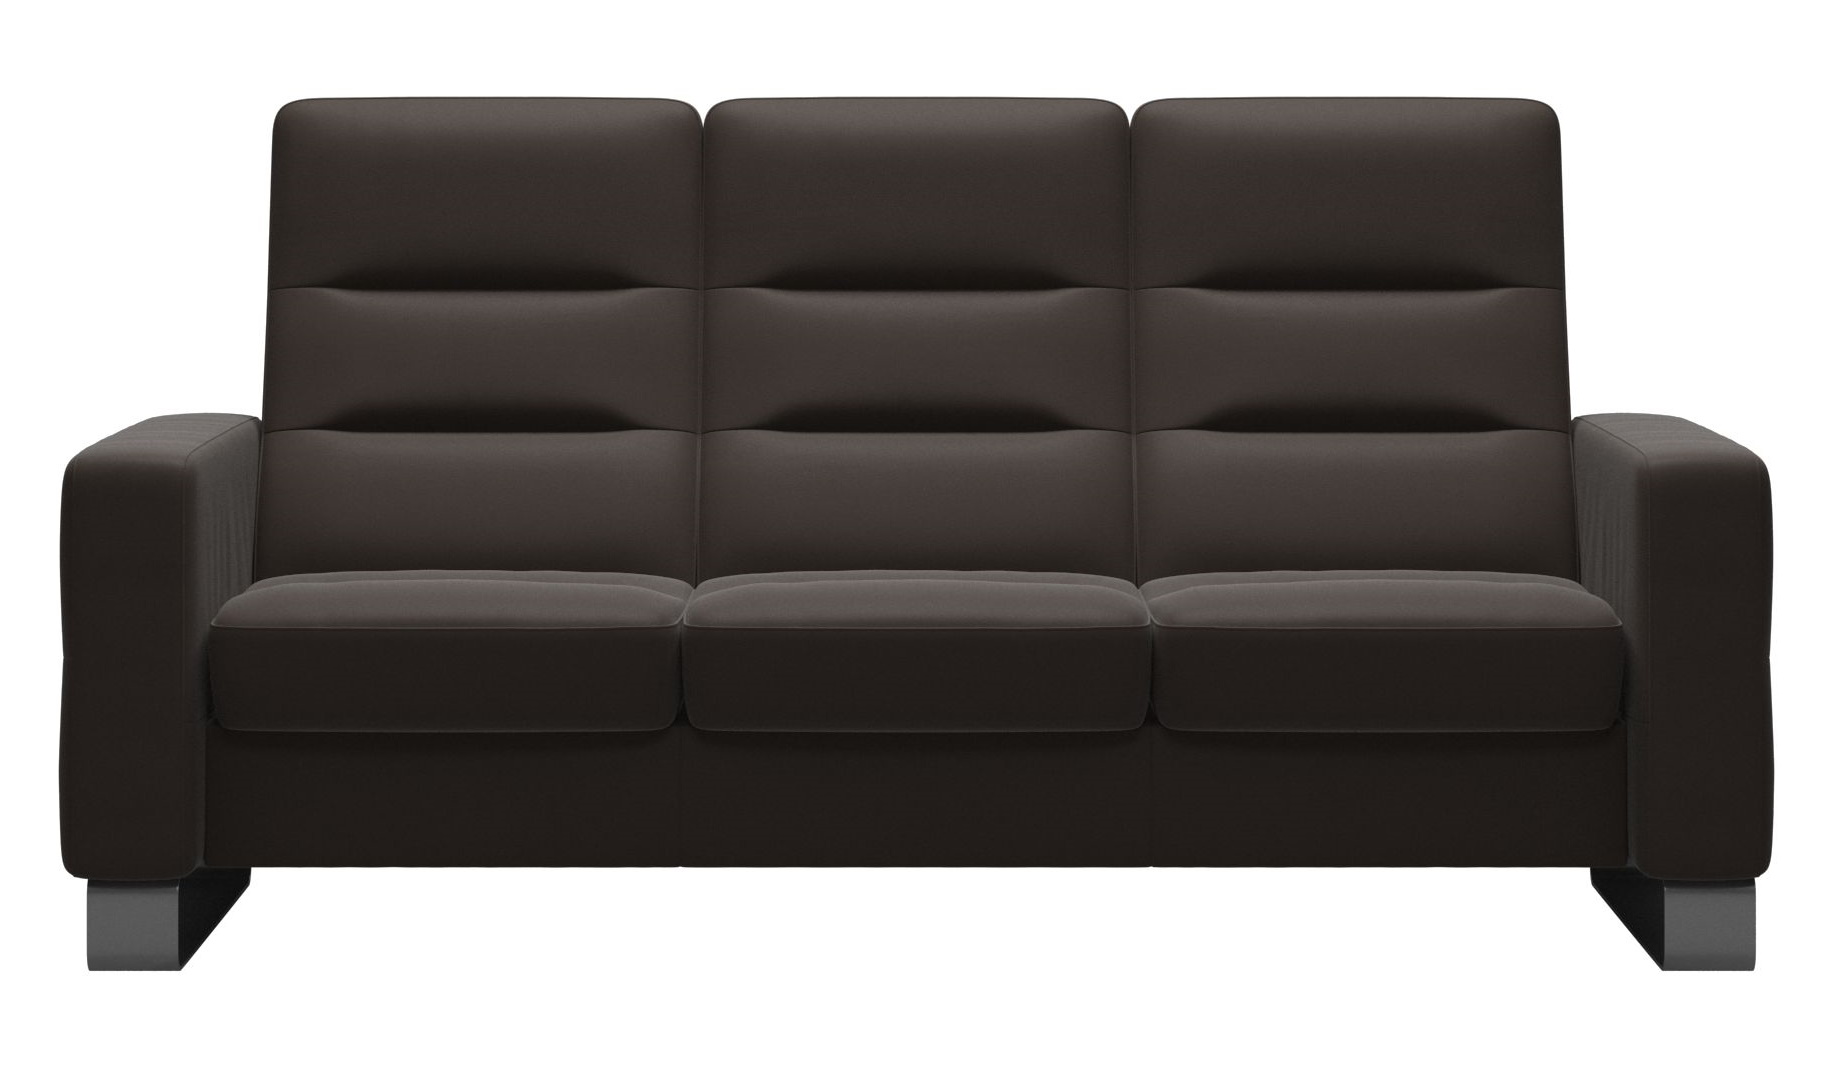 Canapea cu 3 locuri Stressless Wave M cu spatar inalt picioare inox tapiterie piele Paloma Chestnut Canapea imagine model 2022